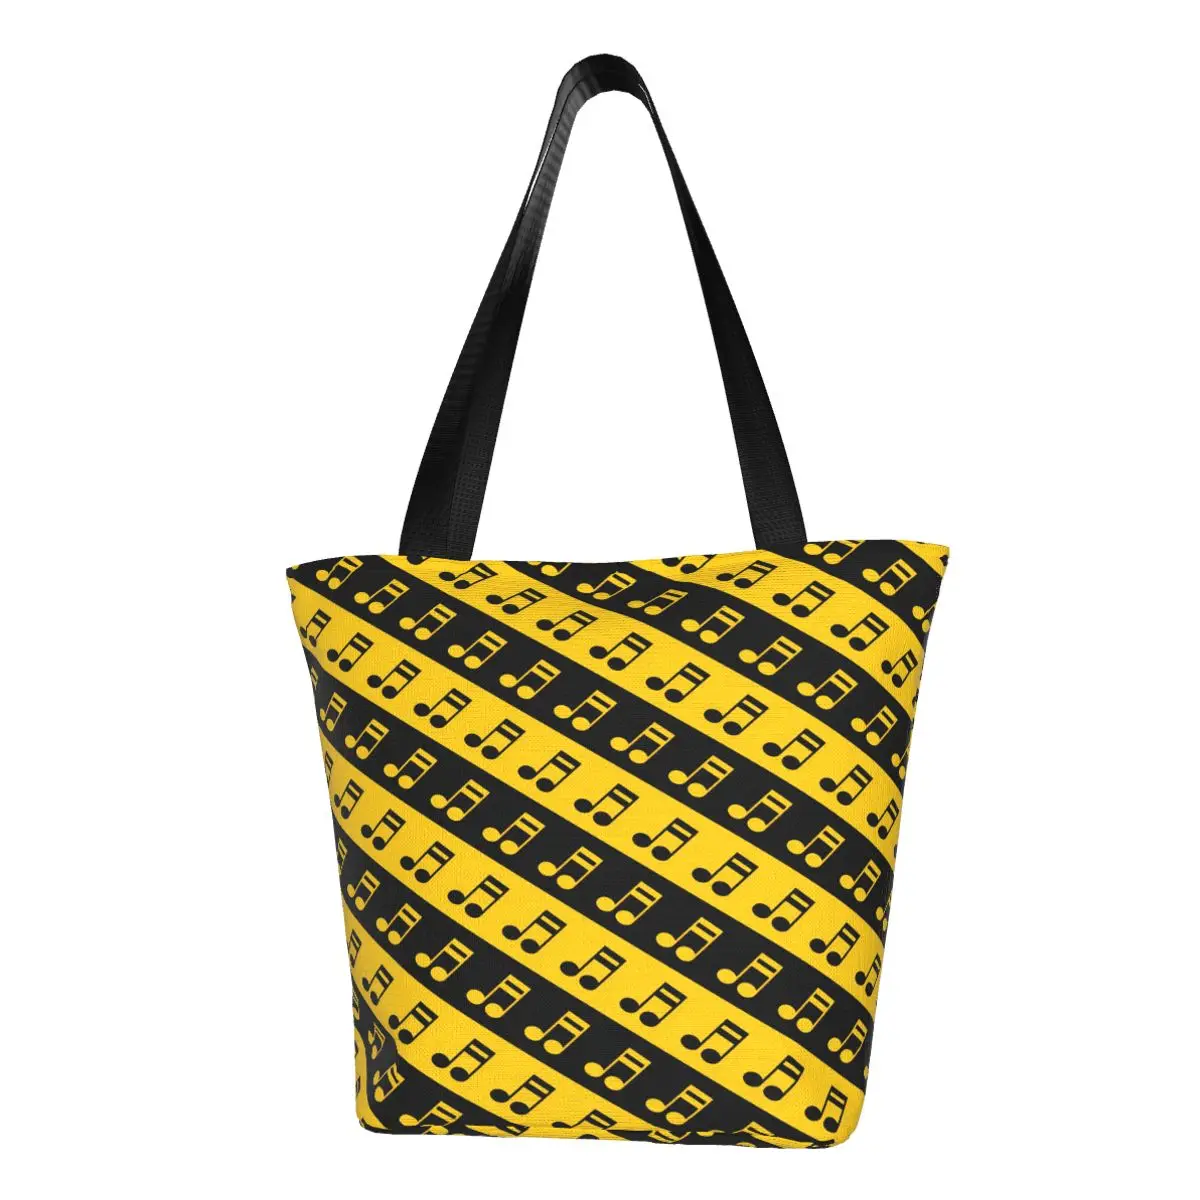 

Сумка-шоппер с музыкальными нотами, черная и желтая сумка через плечо, Студенческая пляжная сумка-тоут из полиэстера, винтажные дизайнерские сумки